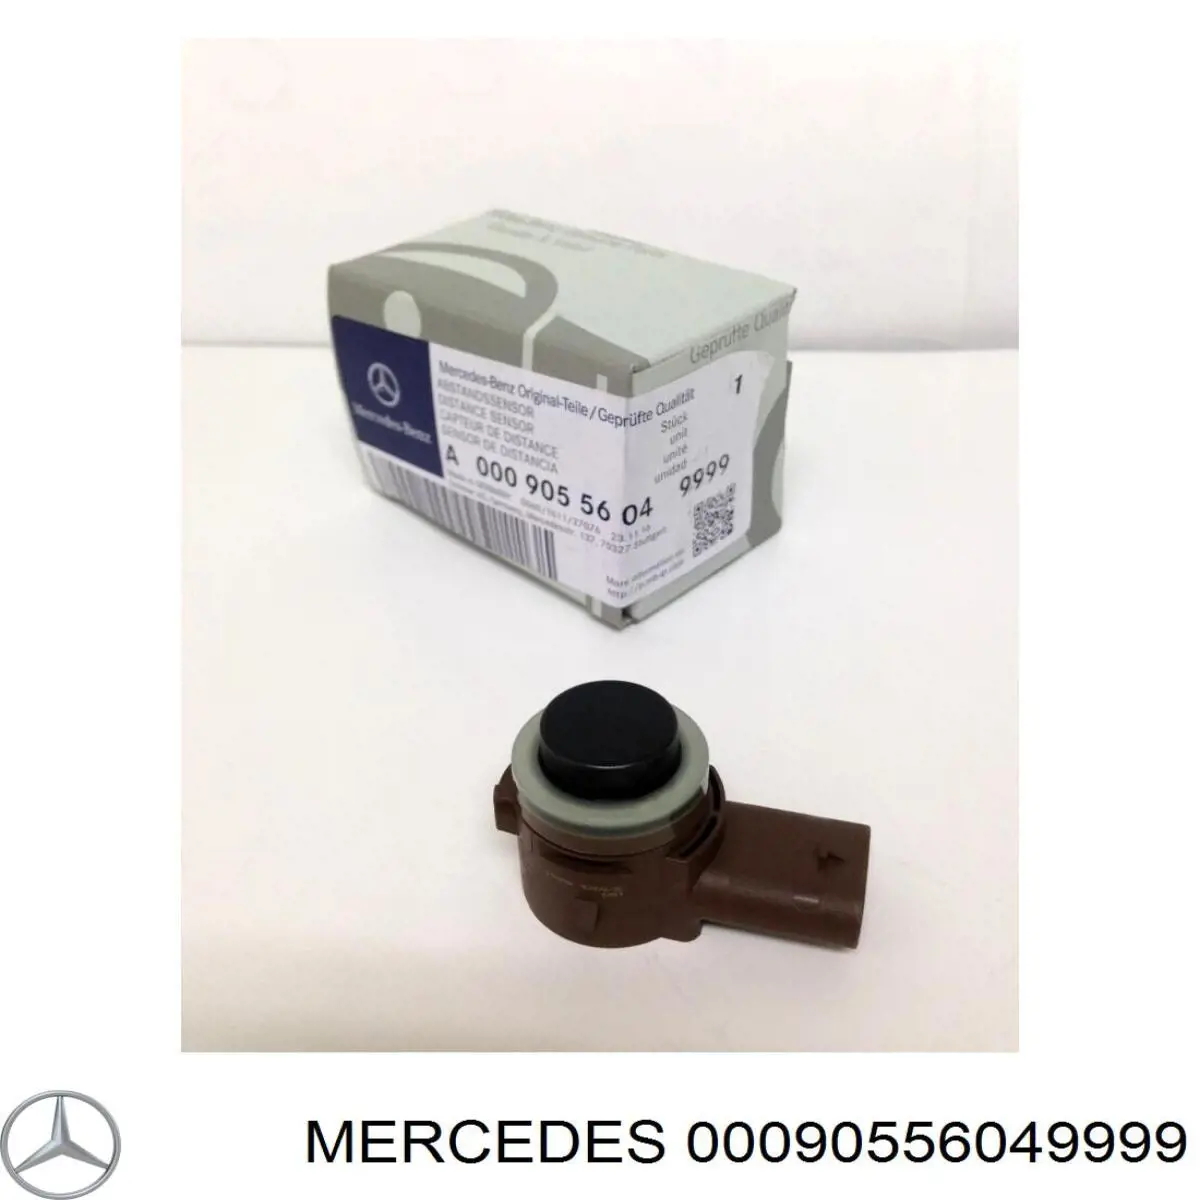 00090556049999 Mercedes sensor de alarma de estacionamiento(packtronic Parte Delantera/Trasera)